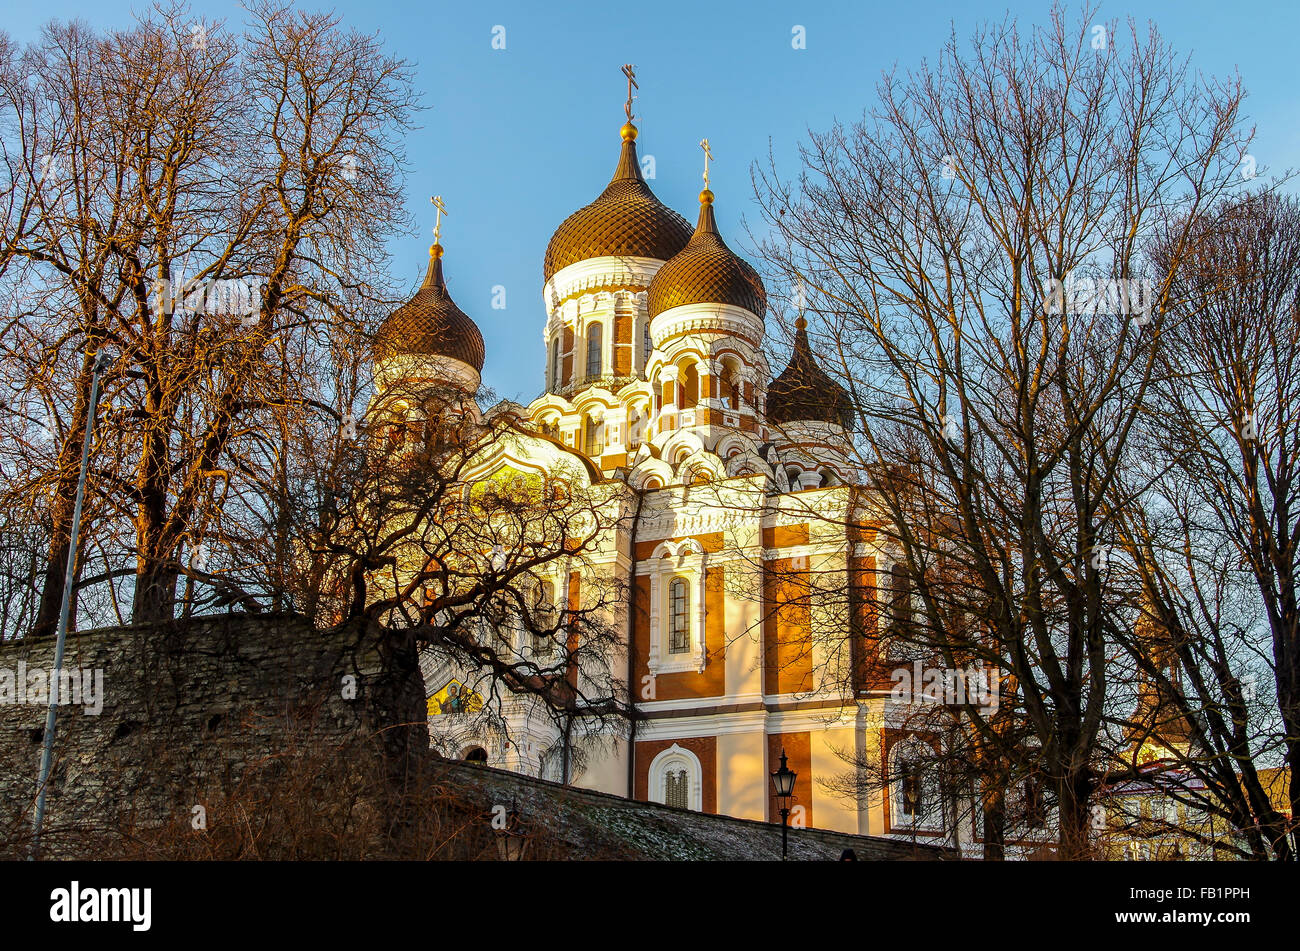 La cathédrale Alexandre Nevsky, Tallinn, Estonie Banque D'Images